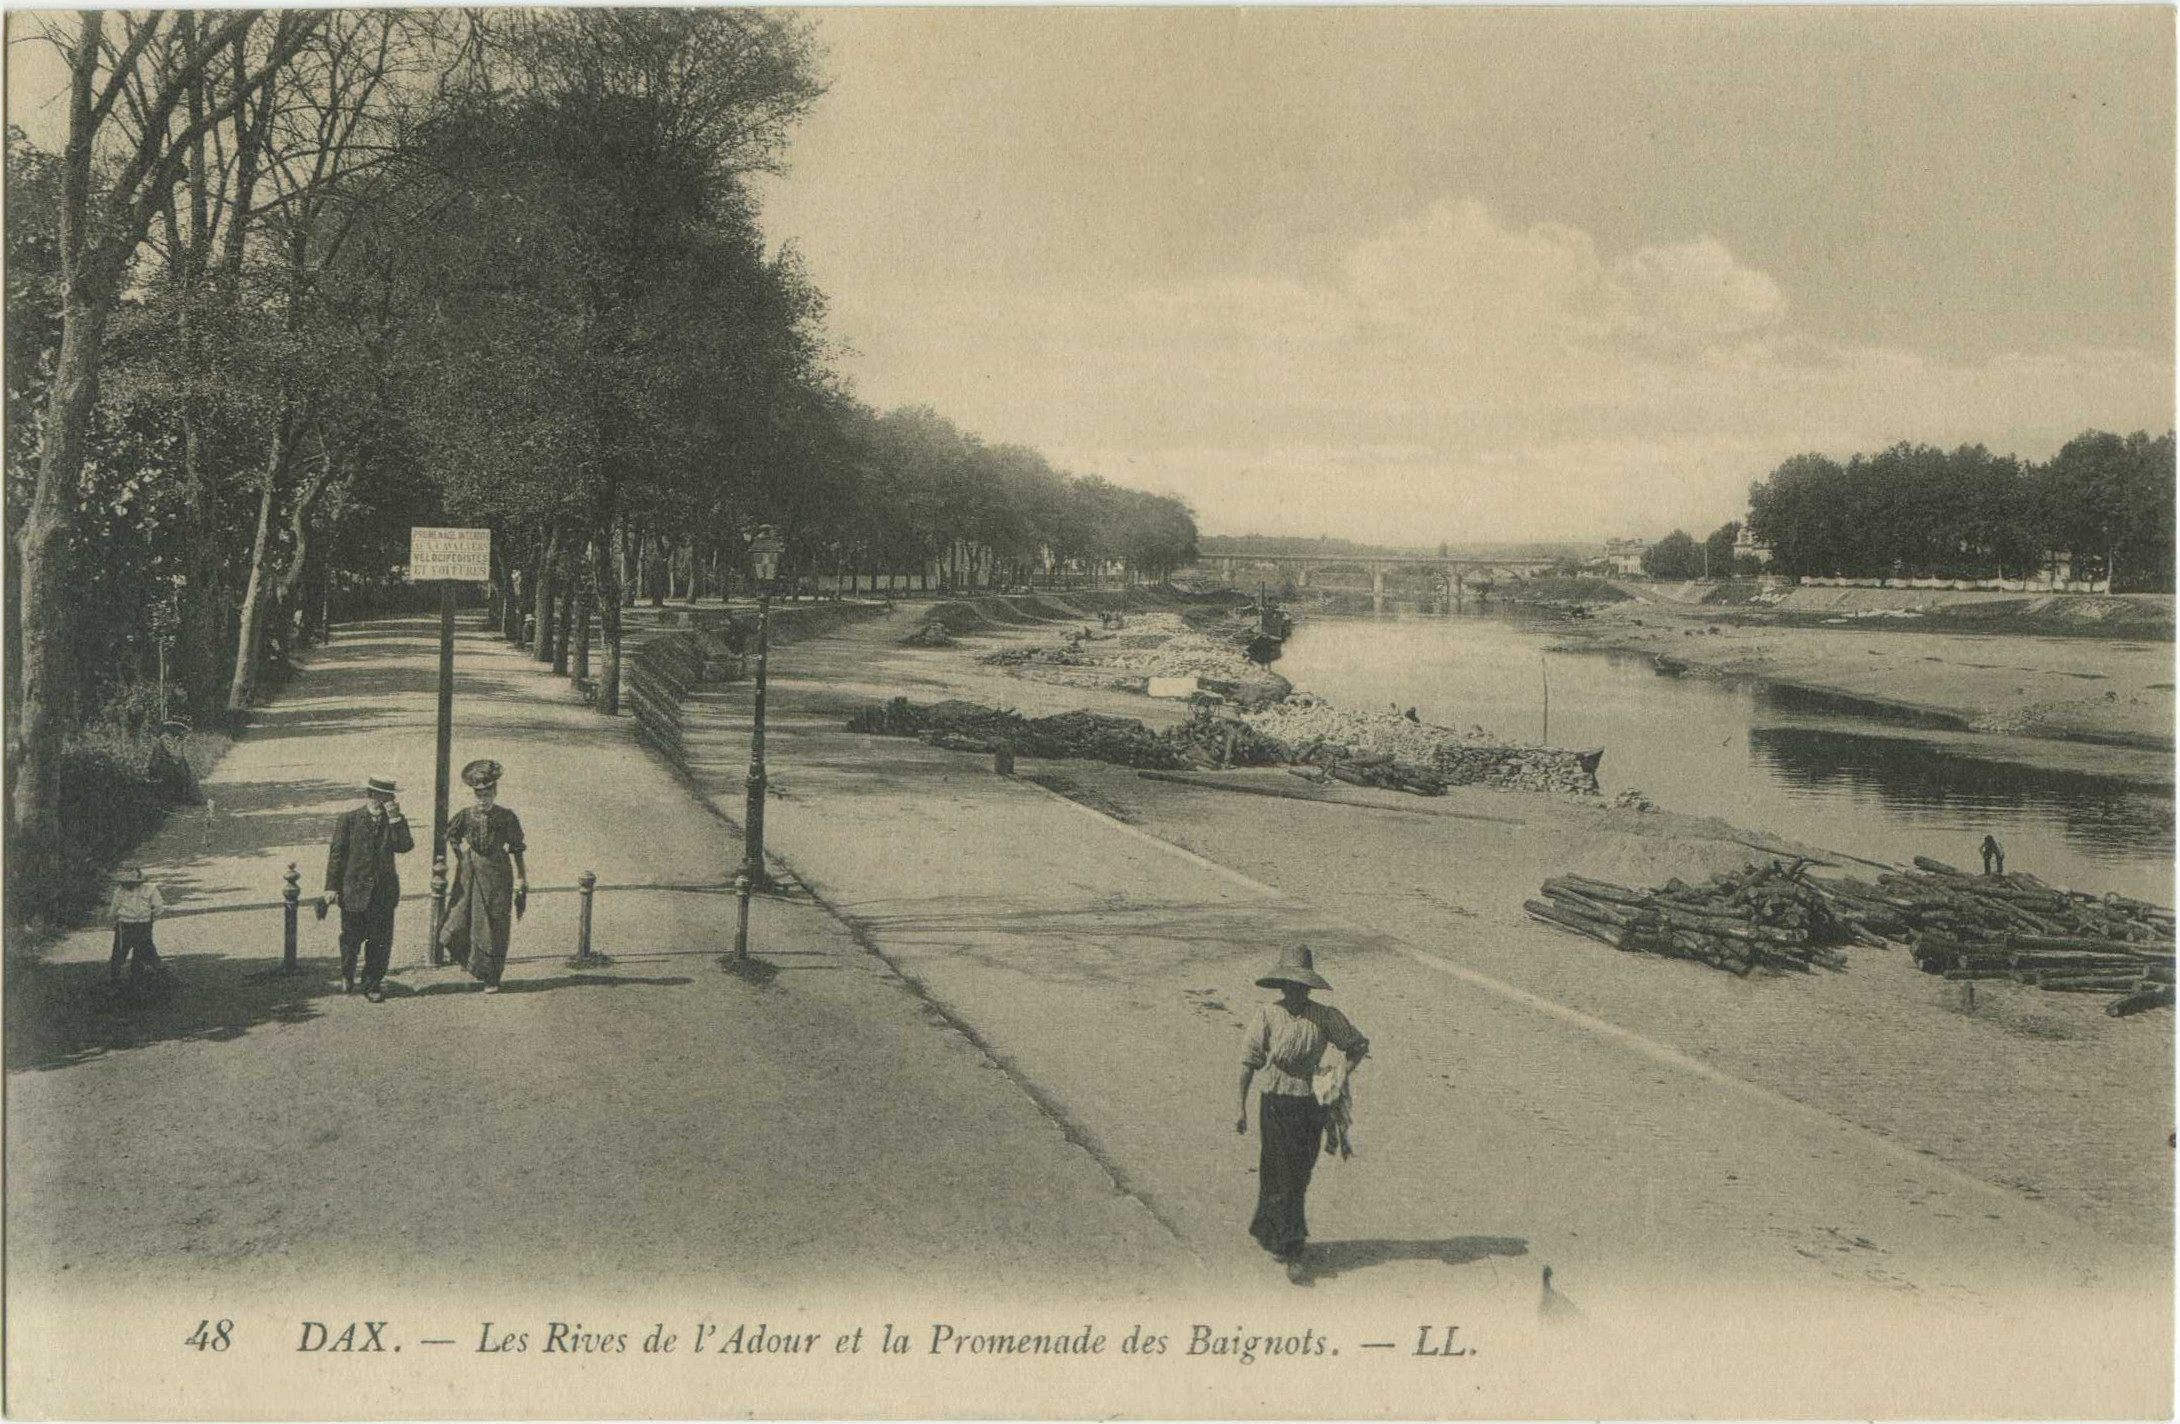 Dax - Les Rives de l'Adour et la Promenade des Baignots.